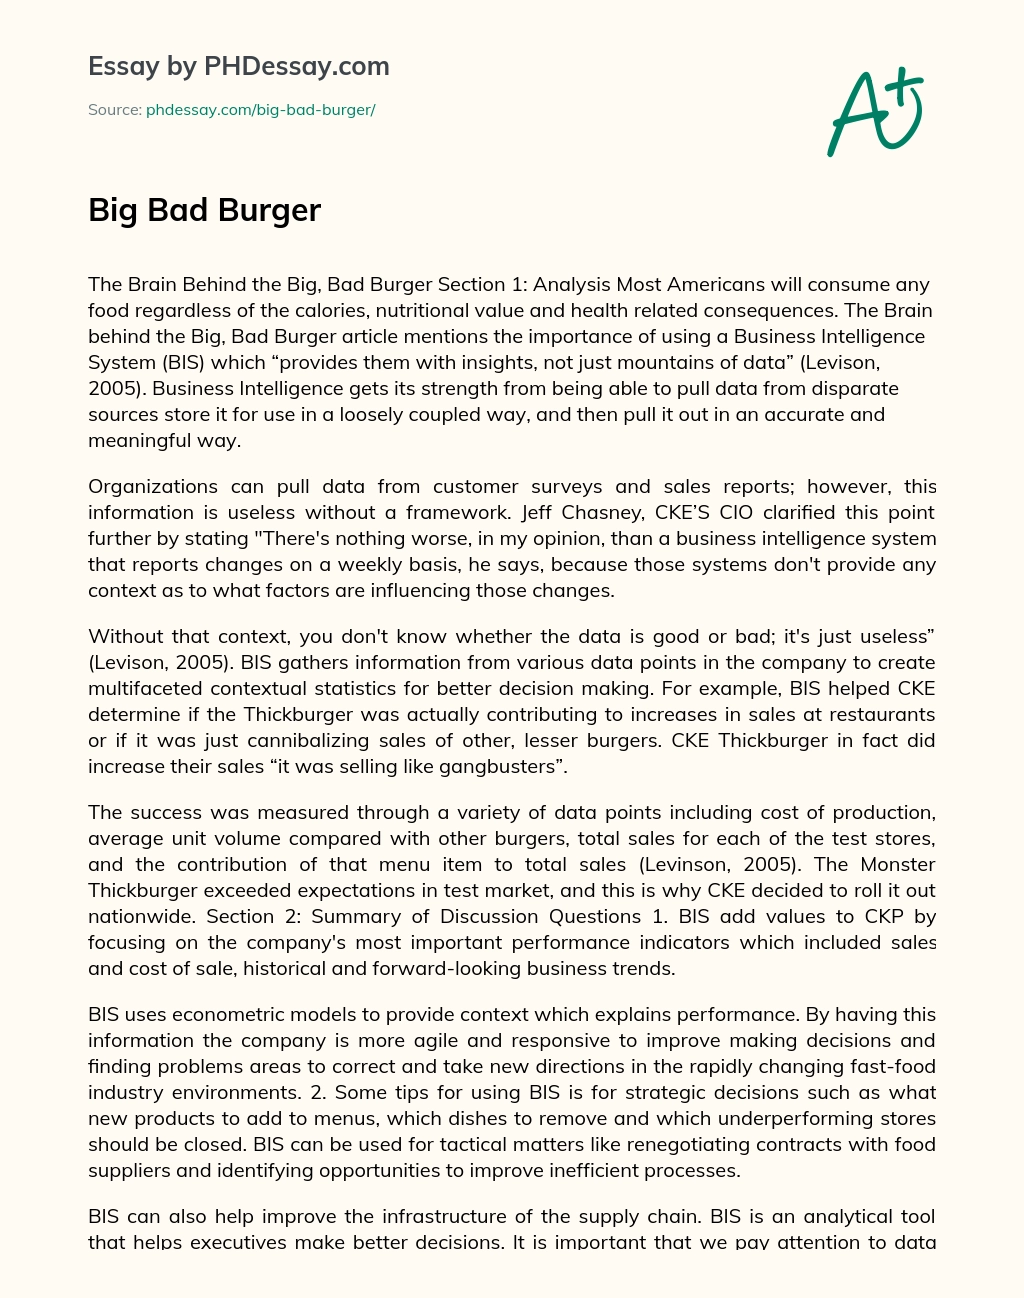 Big Bad Burger essay